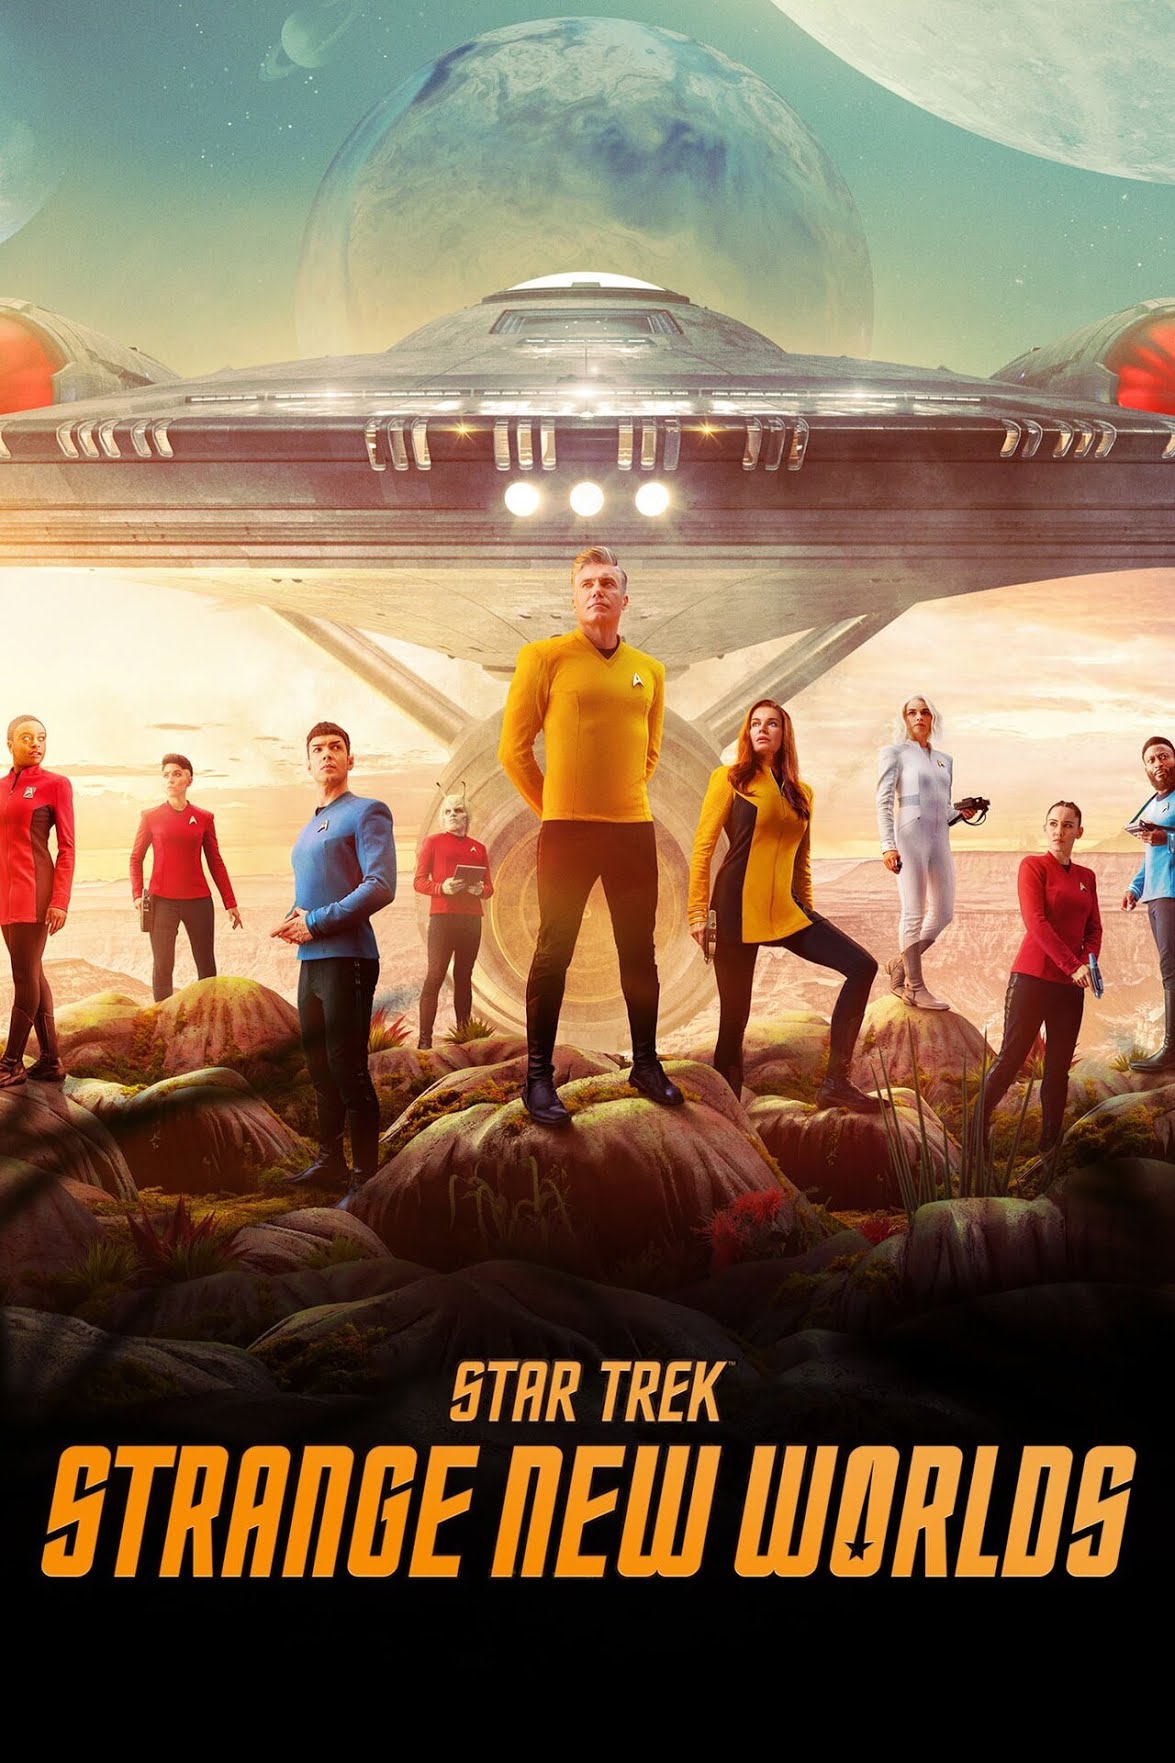 _**Star Trek: Strange New Worlds**_